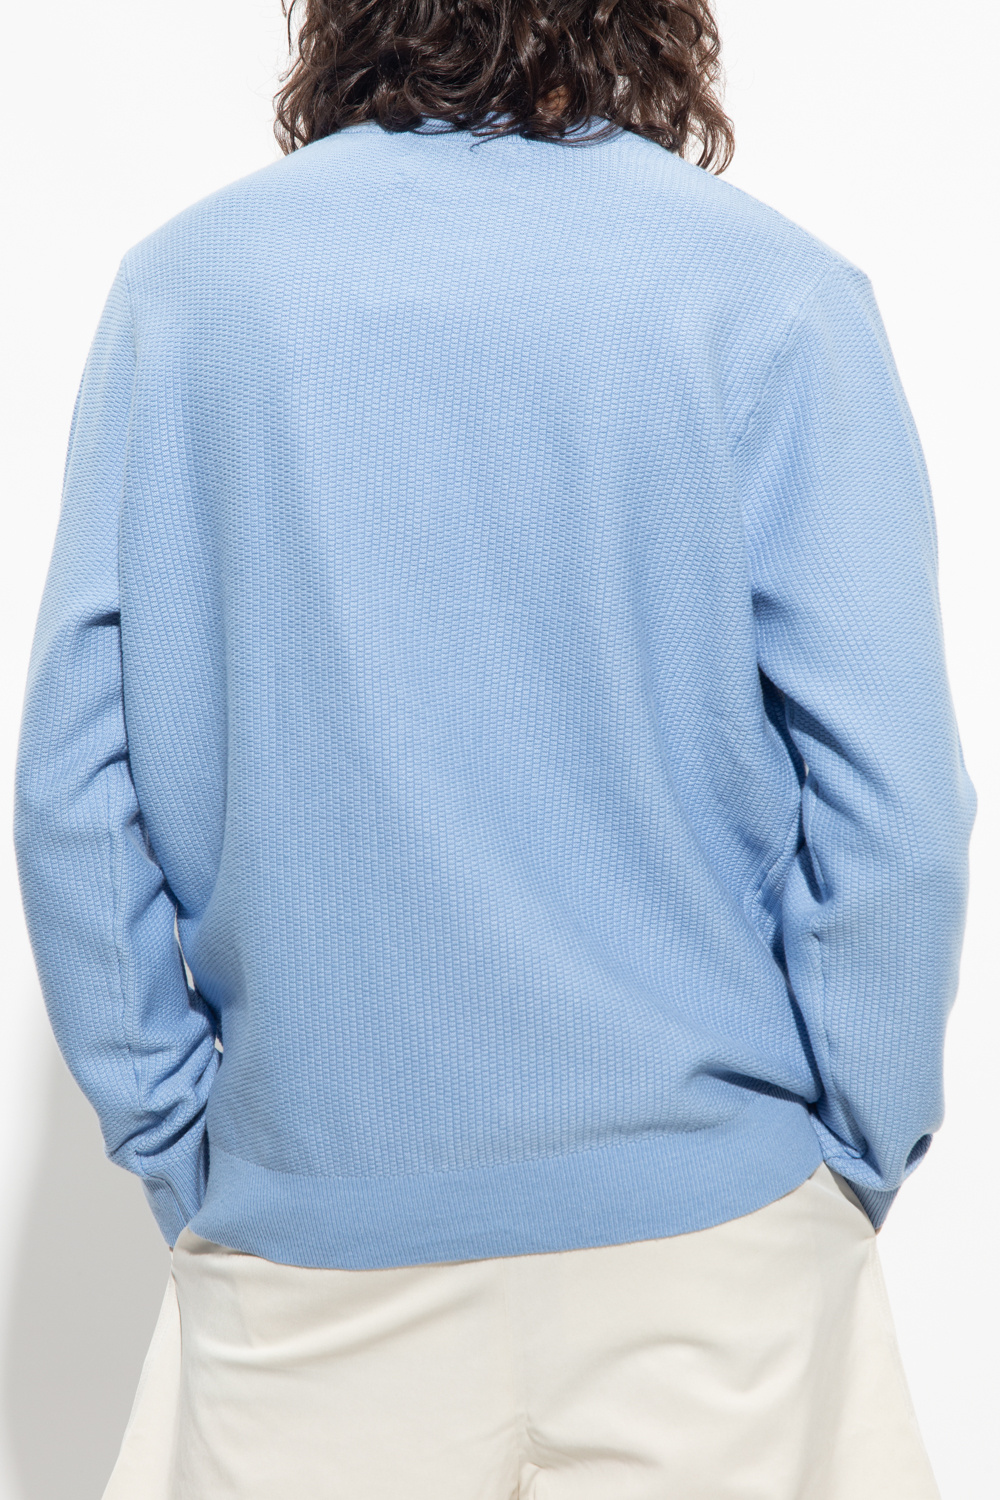 Samsøe Samsøe ‘Garam’ sweater